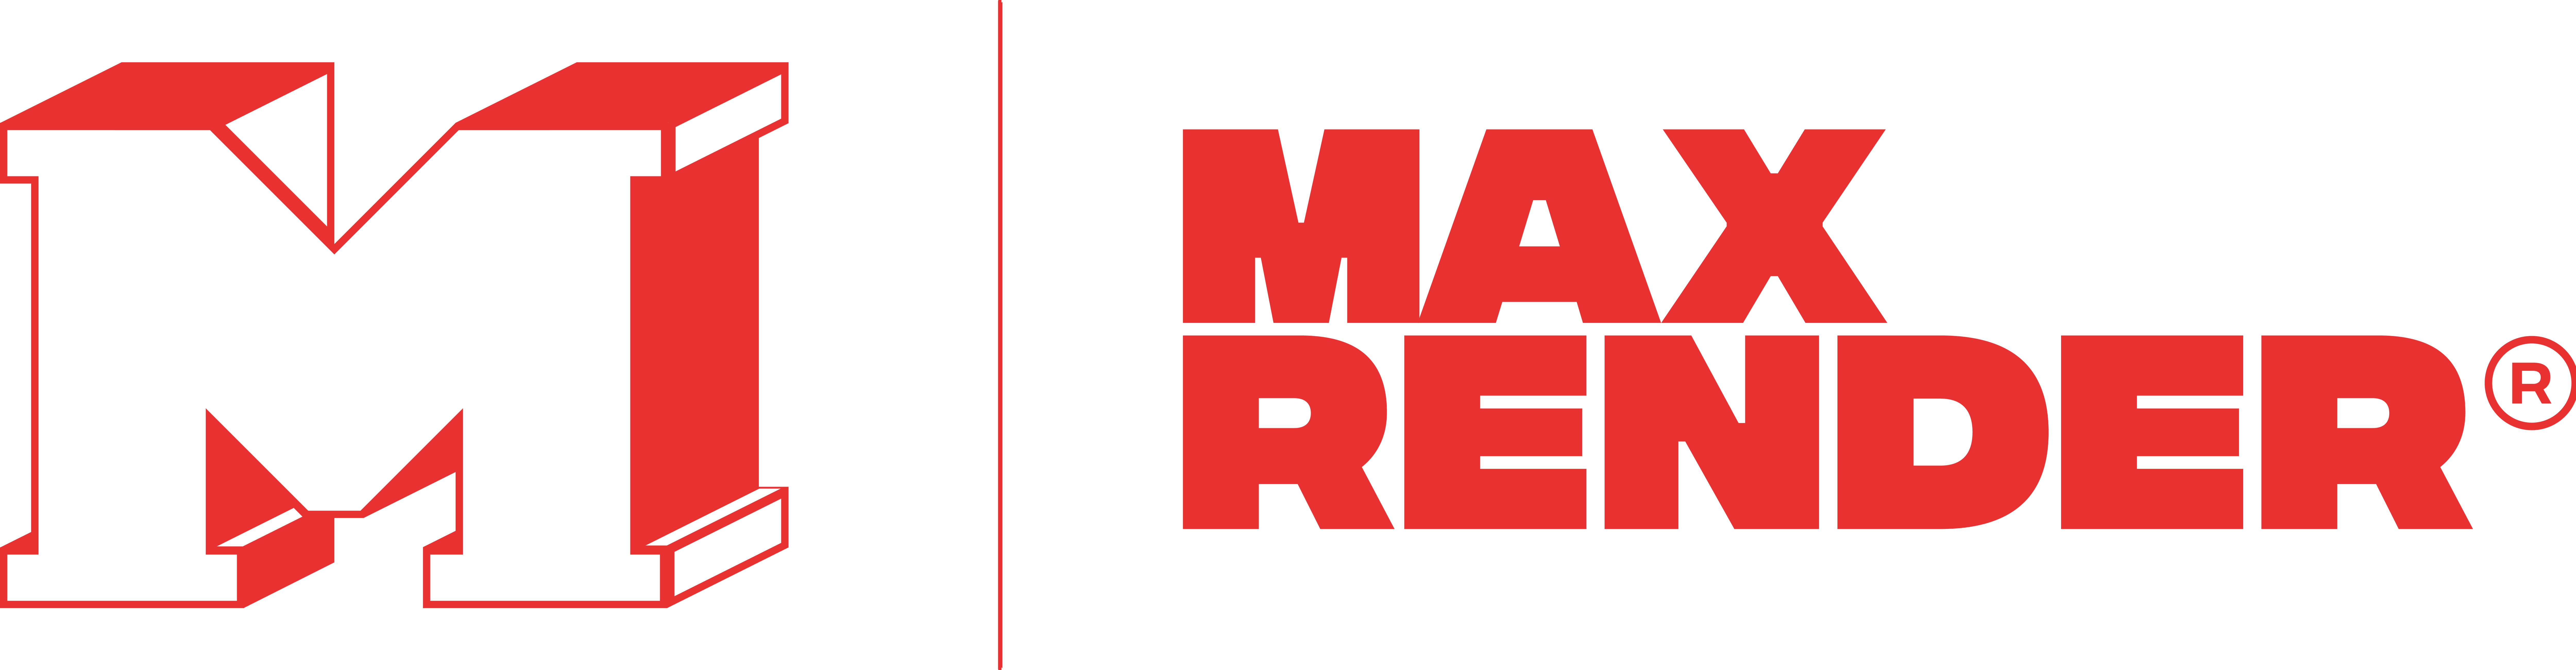 logomarca MaxRender vermelha